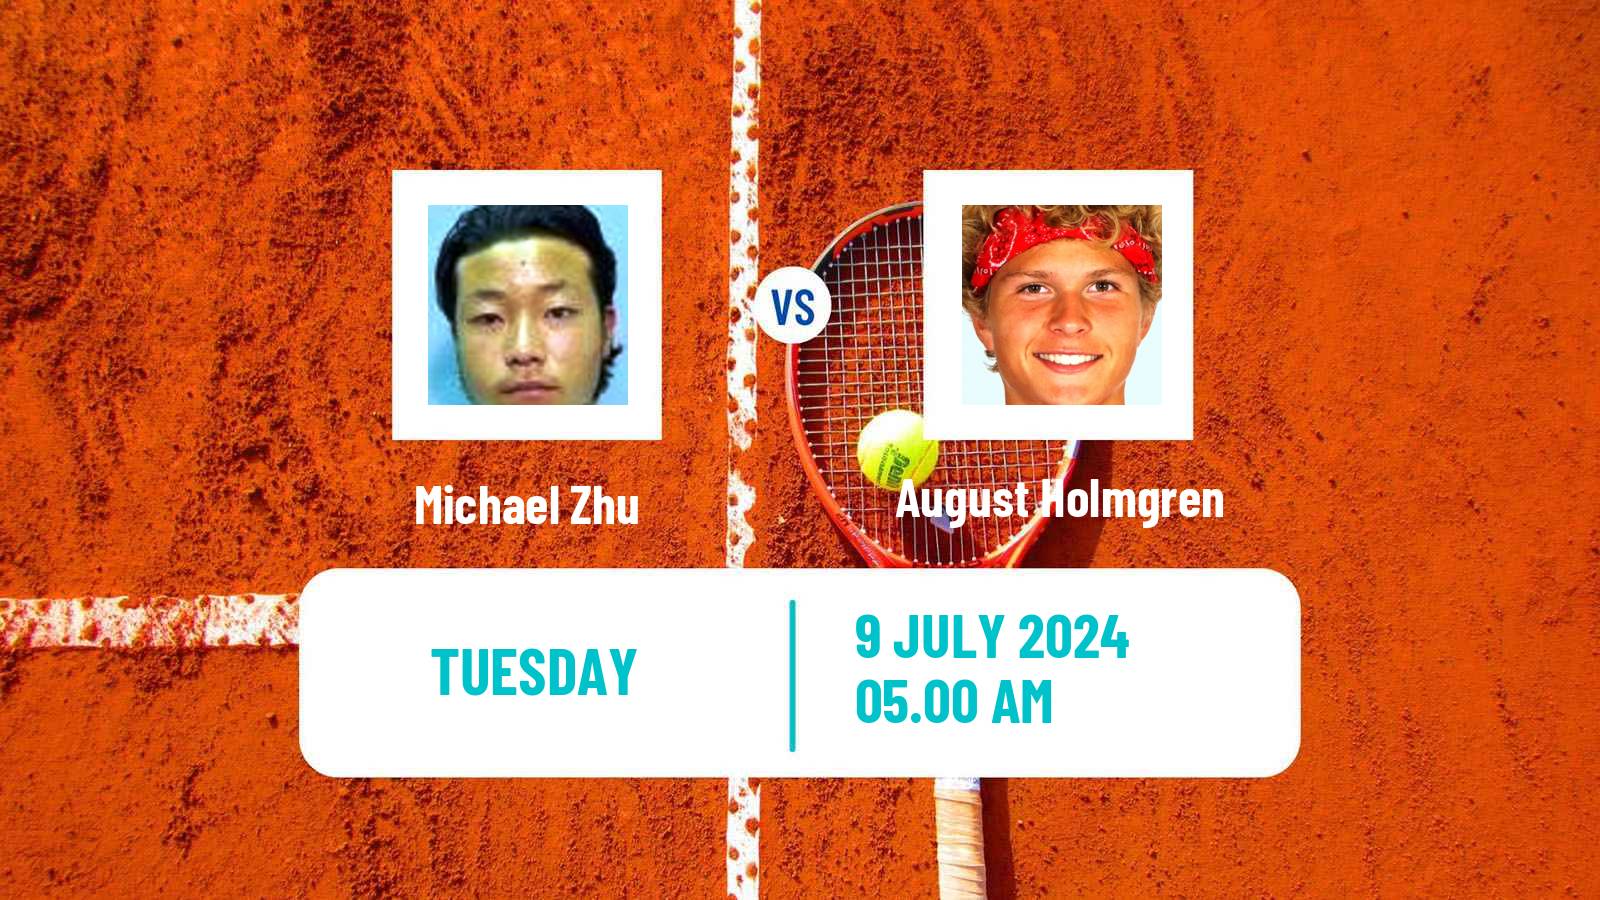 Tennis ITF M25 Nottingham 3 Men Michael Zhu - August Holmgren